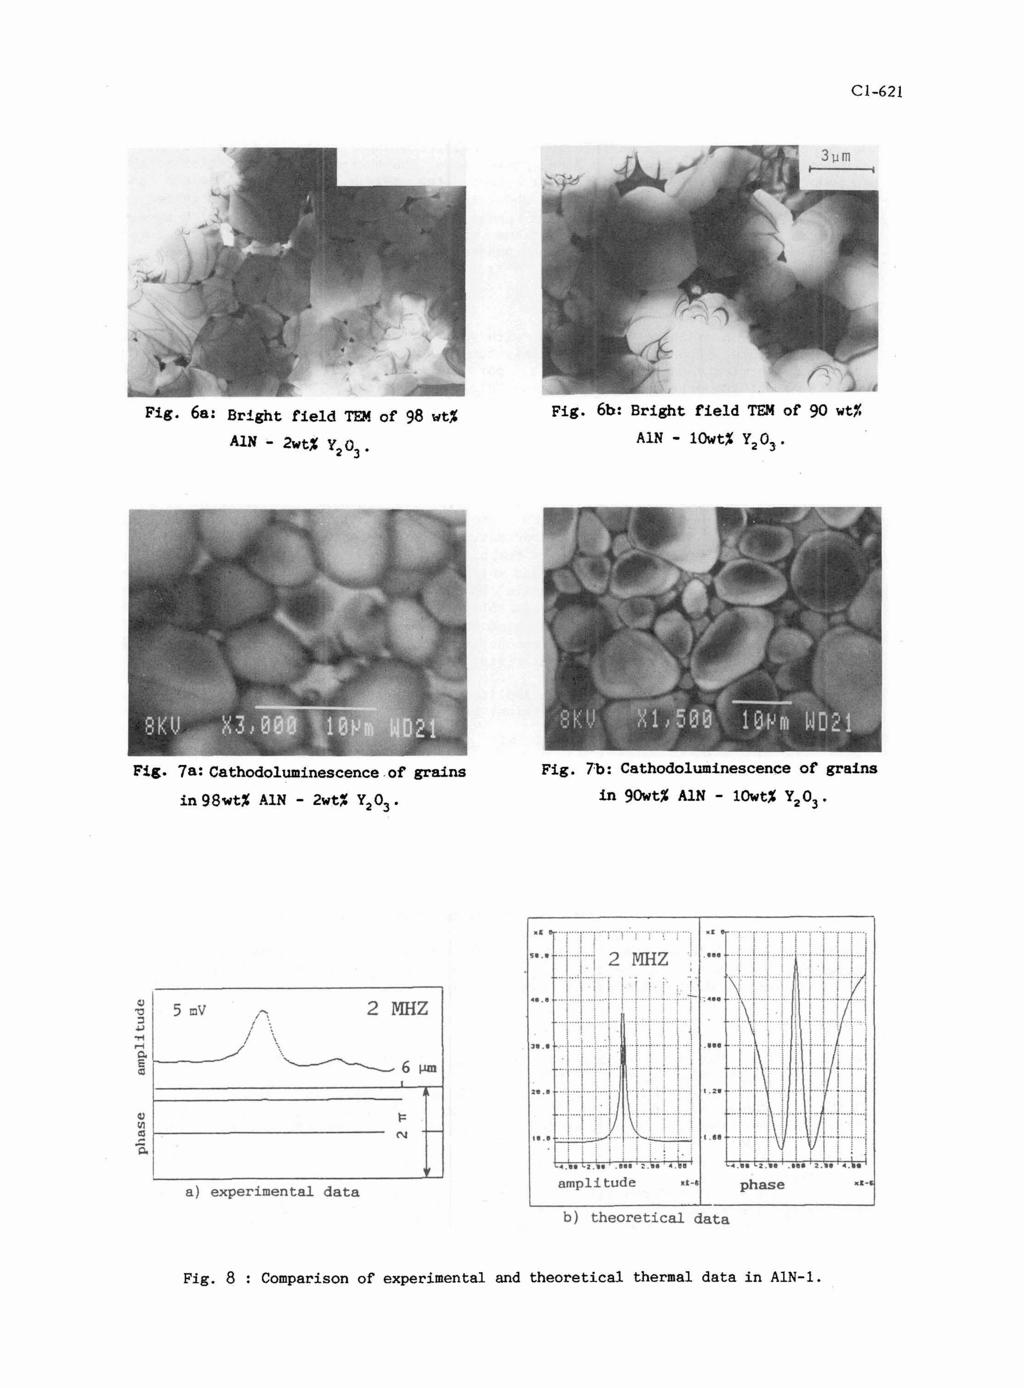 Fig. 6a: Bright field TPI of 98 wt% *IN - Zwt% Yz O3. ~ig. 6b: Bright field TEM of 90 wt% AIN - 10wt;Y Y20J. Fig. 7a: Cathodoluminescence of grains in 98wt% A1N - 2wt% Y203. Fig. 7b: Cathodoluminescence of grains in gowt% A1N - lowt% Y2O3.